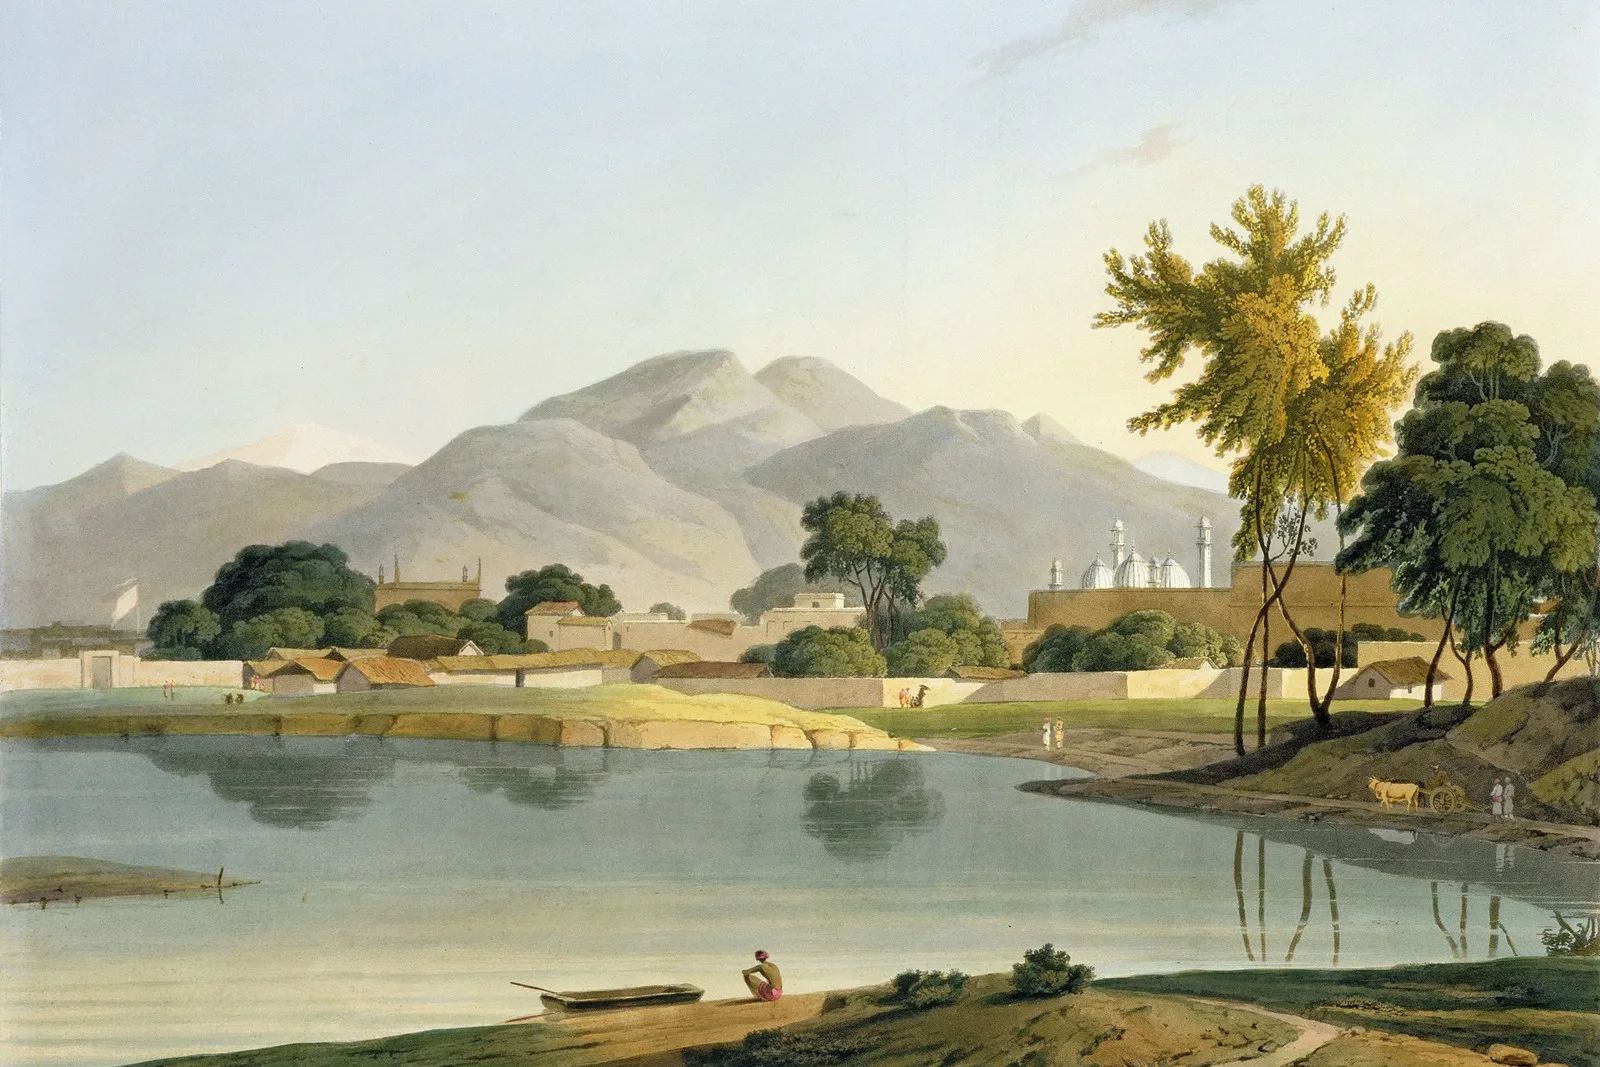 Обои с масляной краской в Ниджейбабаде, Декор, панорамная настенная роспись с индийским пейзажем с изображением реки, мечети и гор